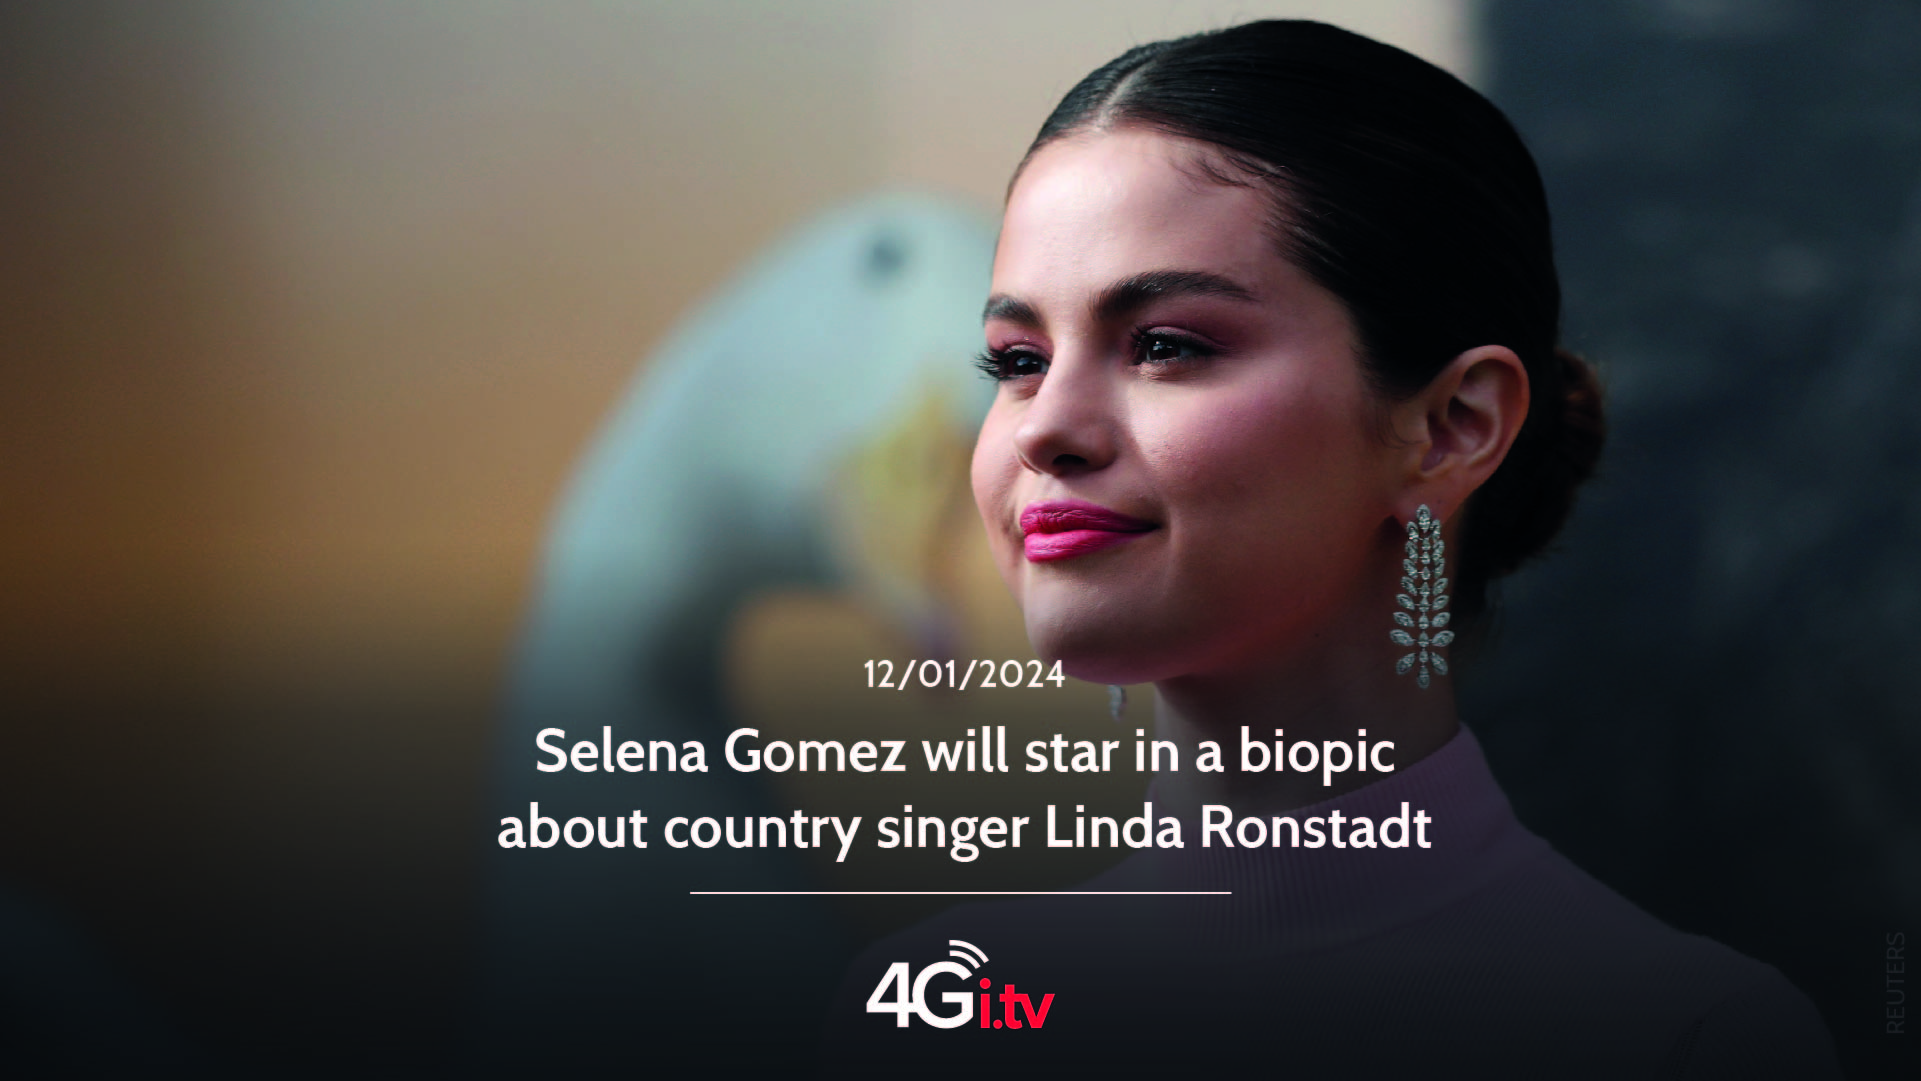 Lesen Sie mehr über den Artikel Selena Gomez will star in a biopic about country singer Linda Ronstadt